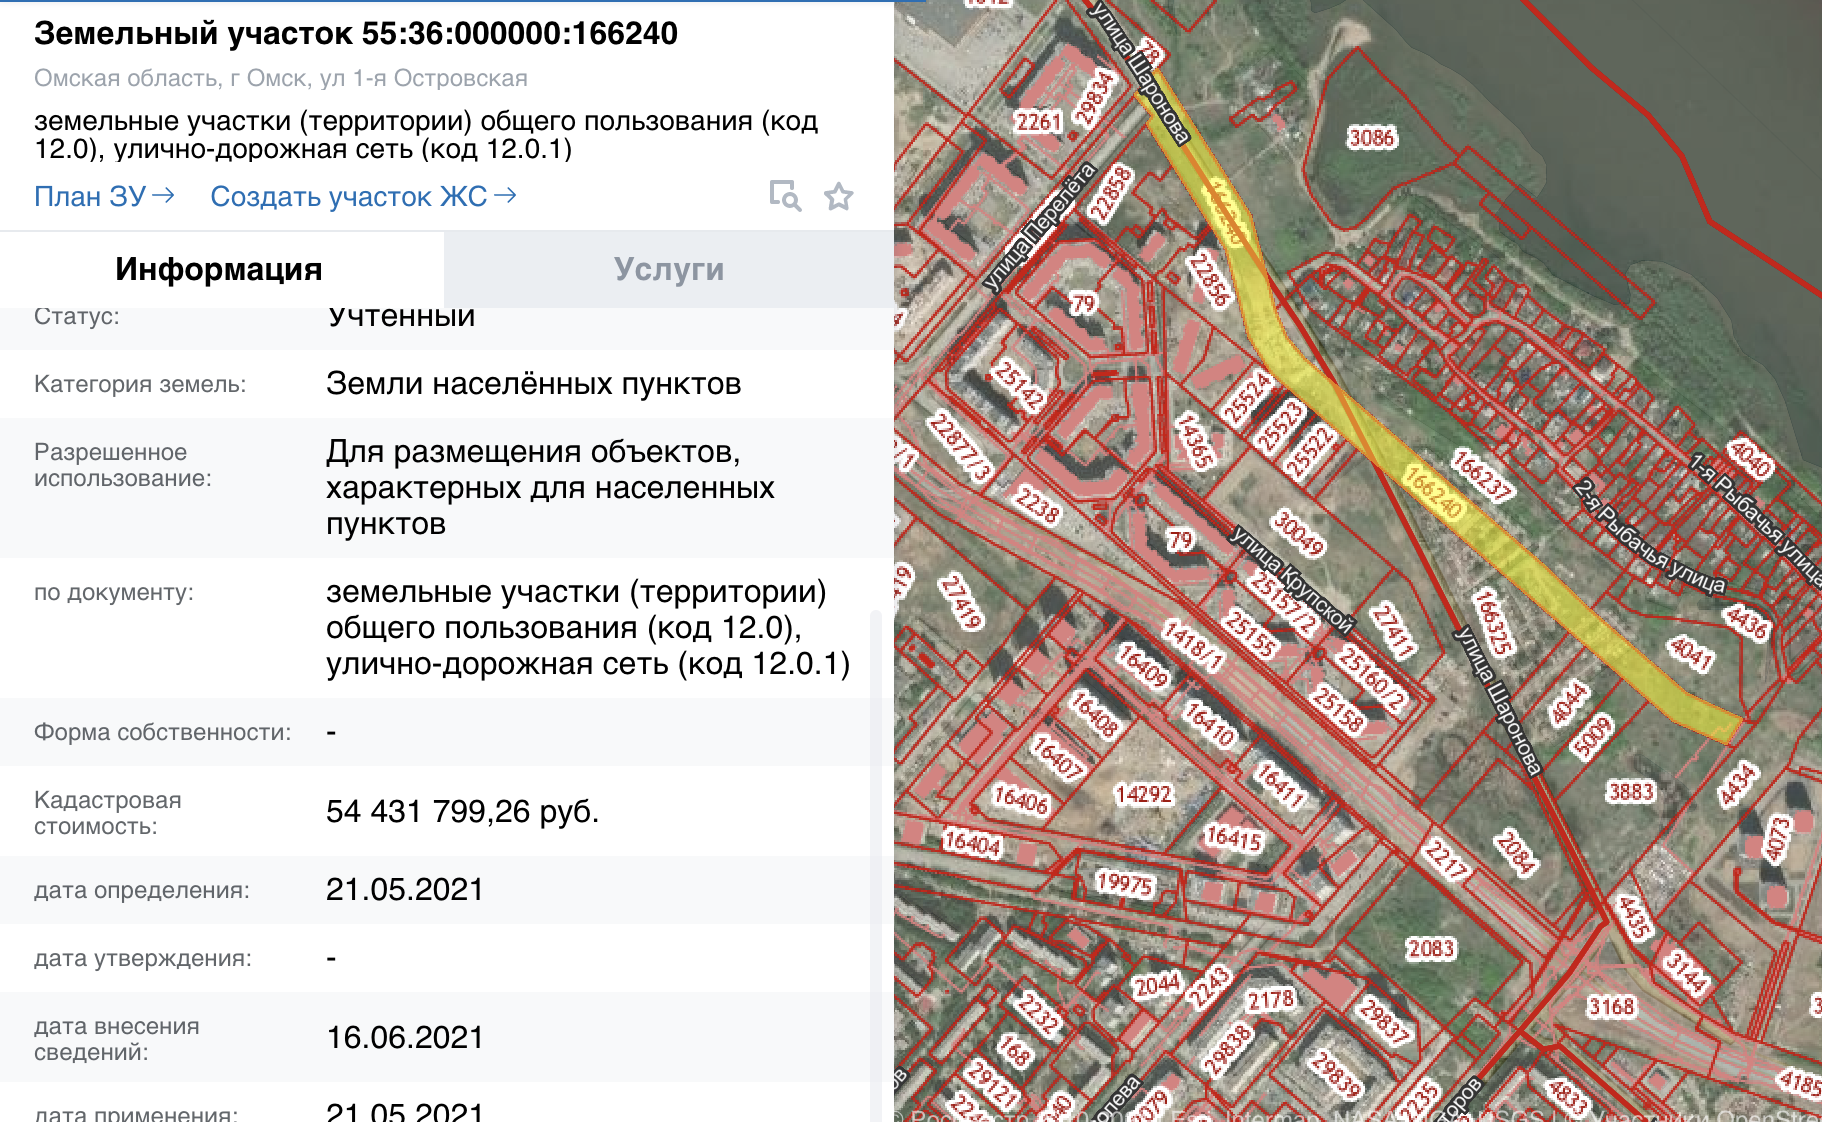 Публичная кадастровая карта оренбургской области 2022 года